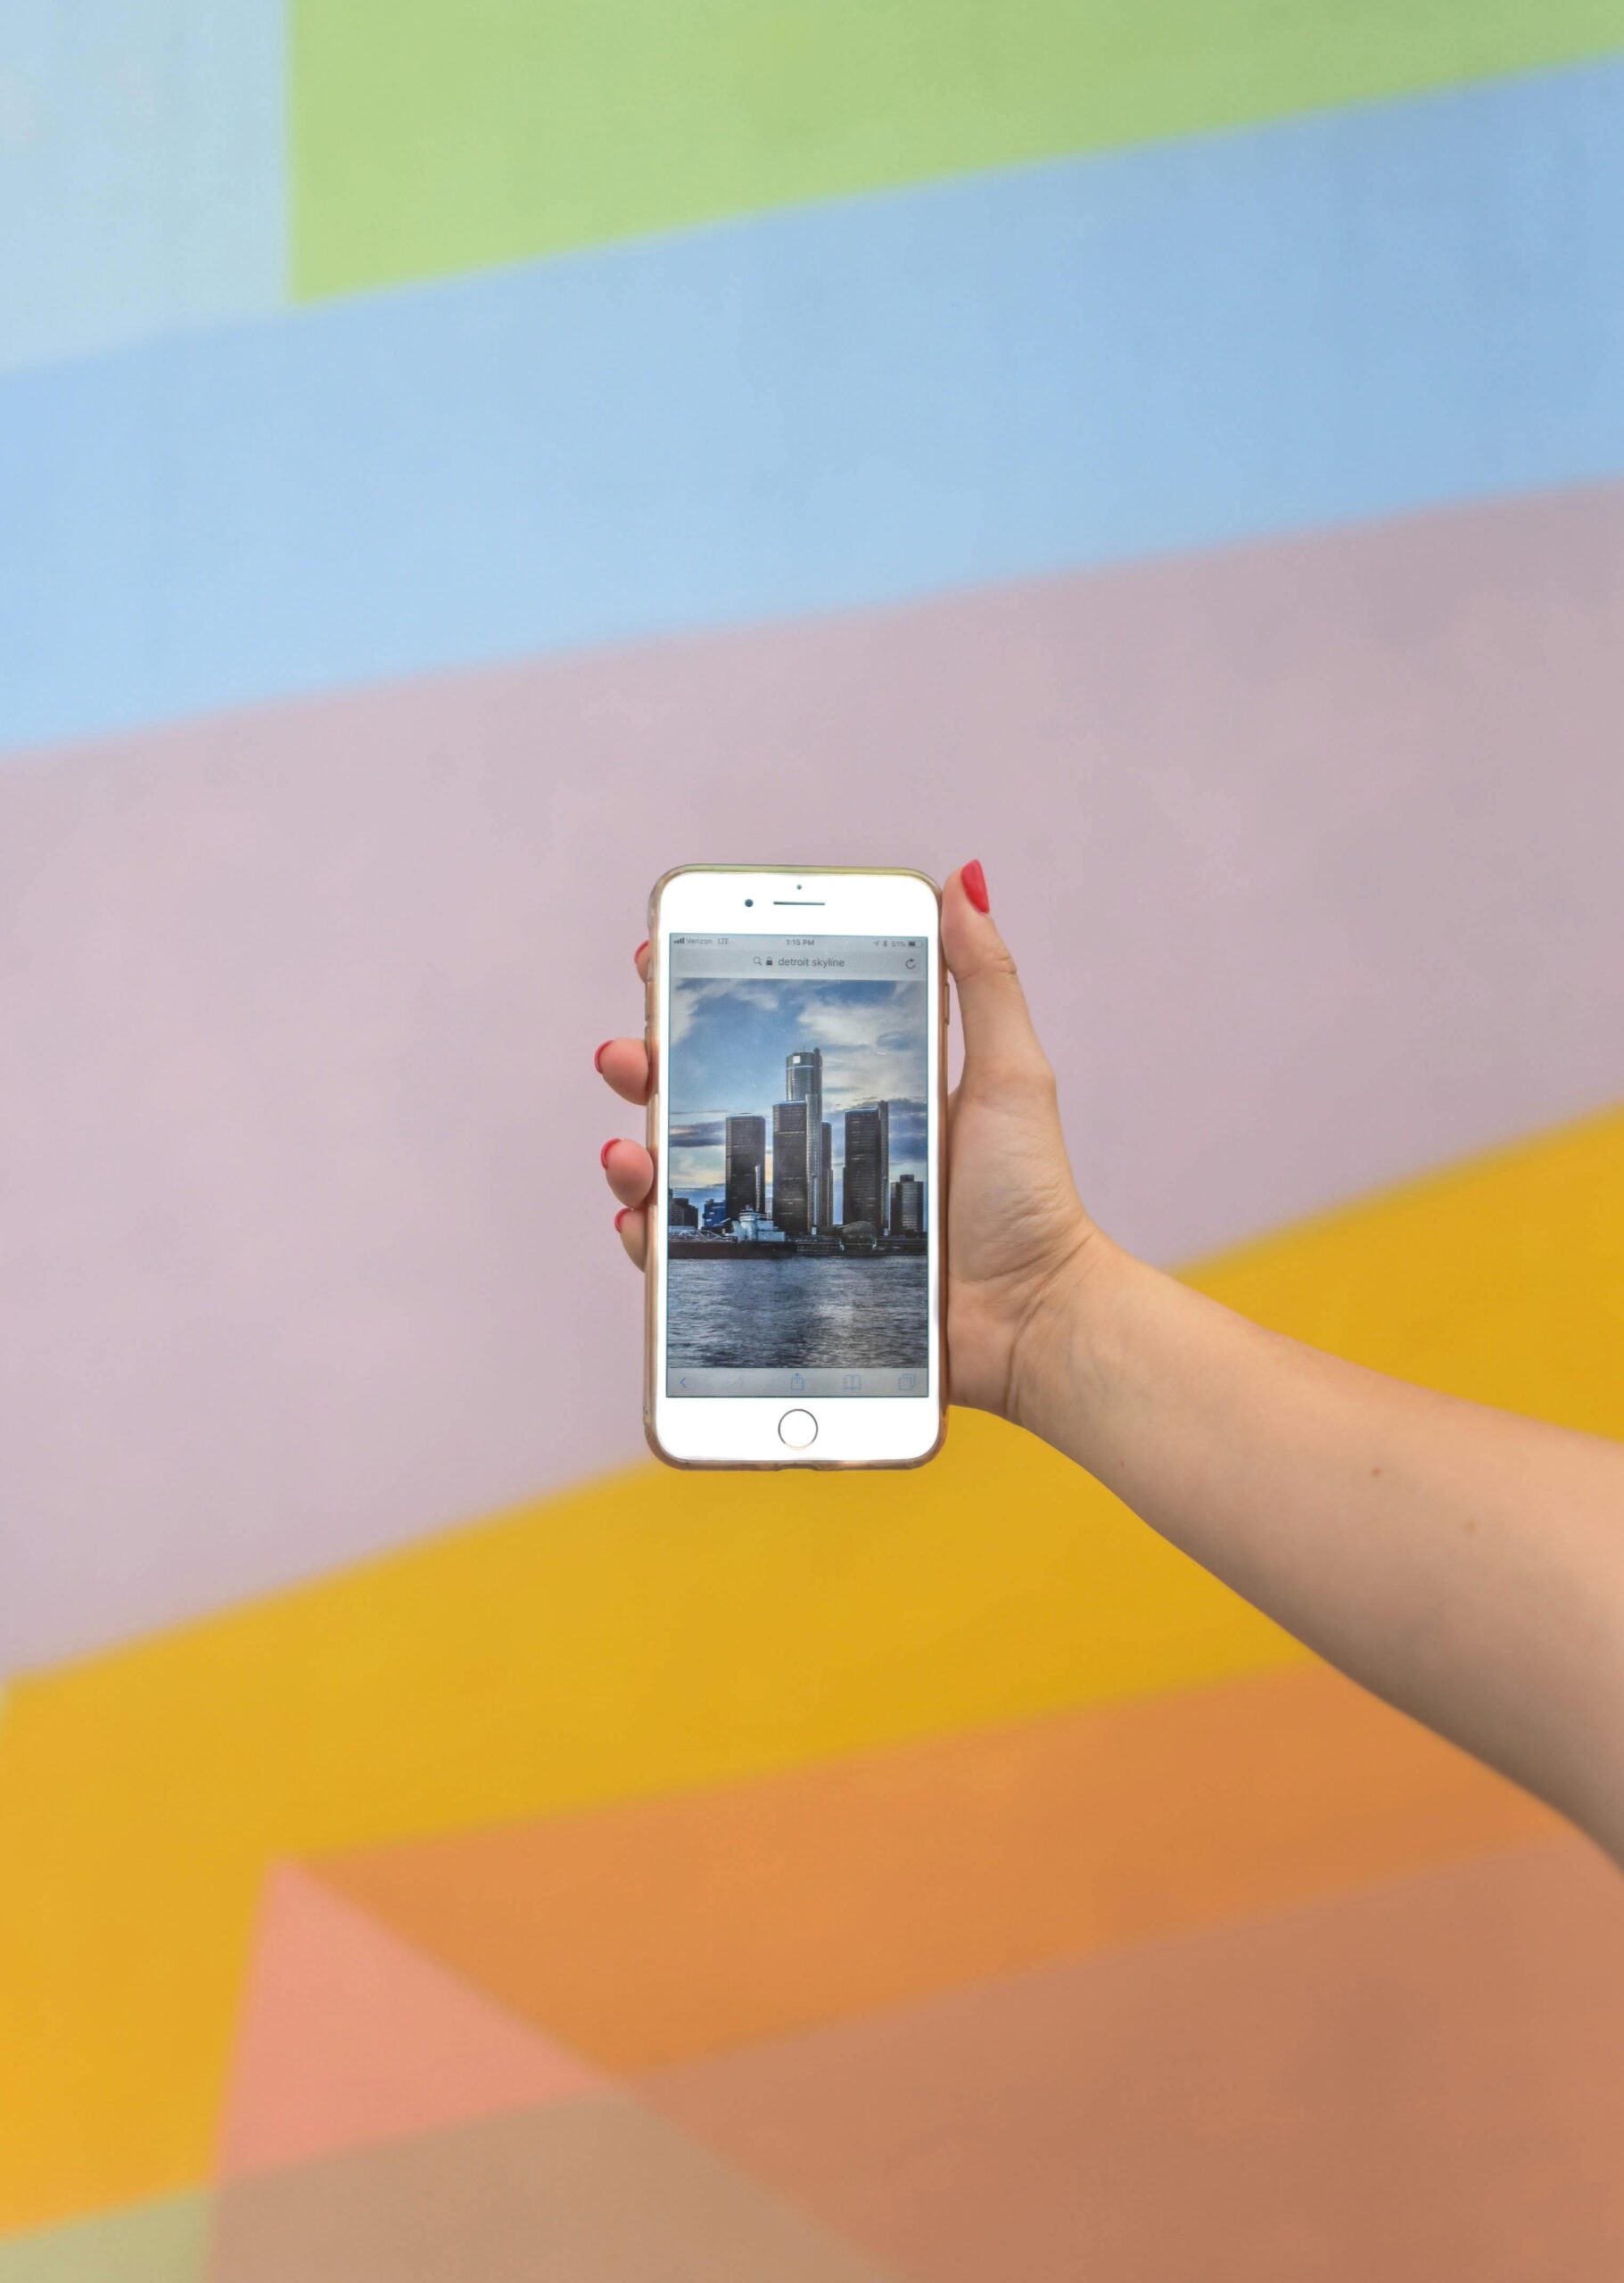 iPhone Wallpaper : Cara Membuat dan Dimana Bisa Mendapatkannya Secara Gratis?